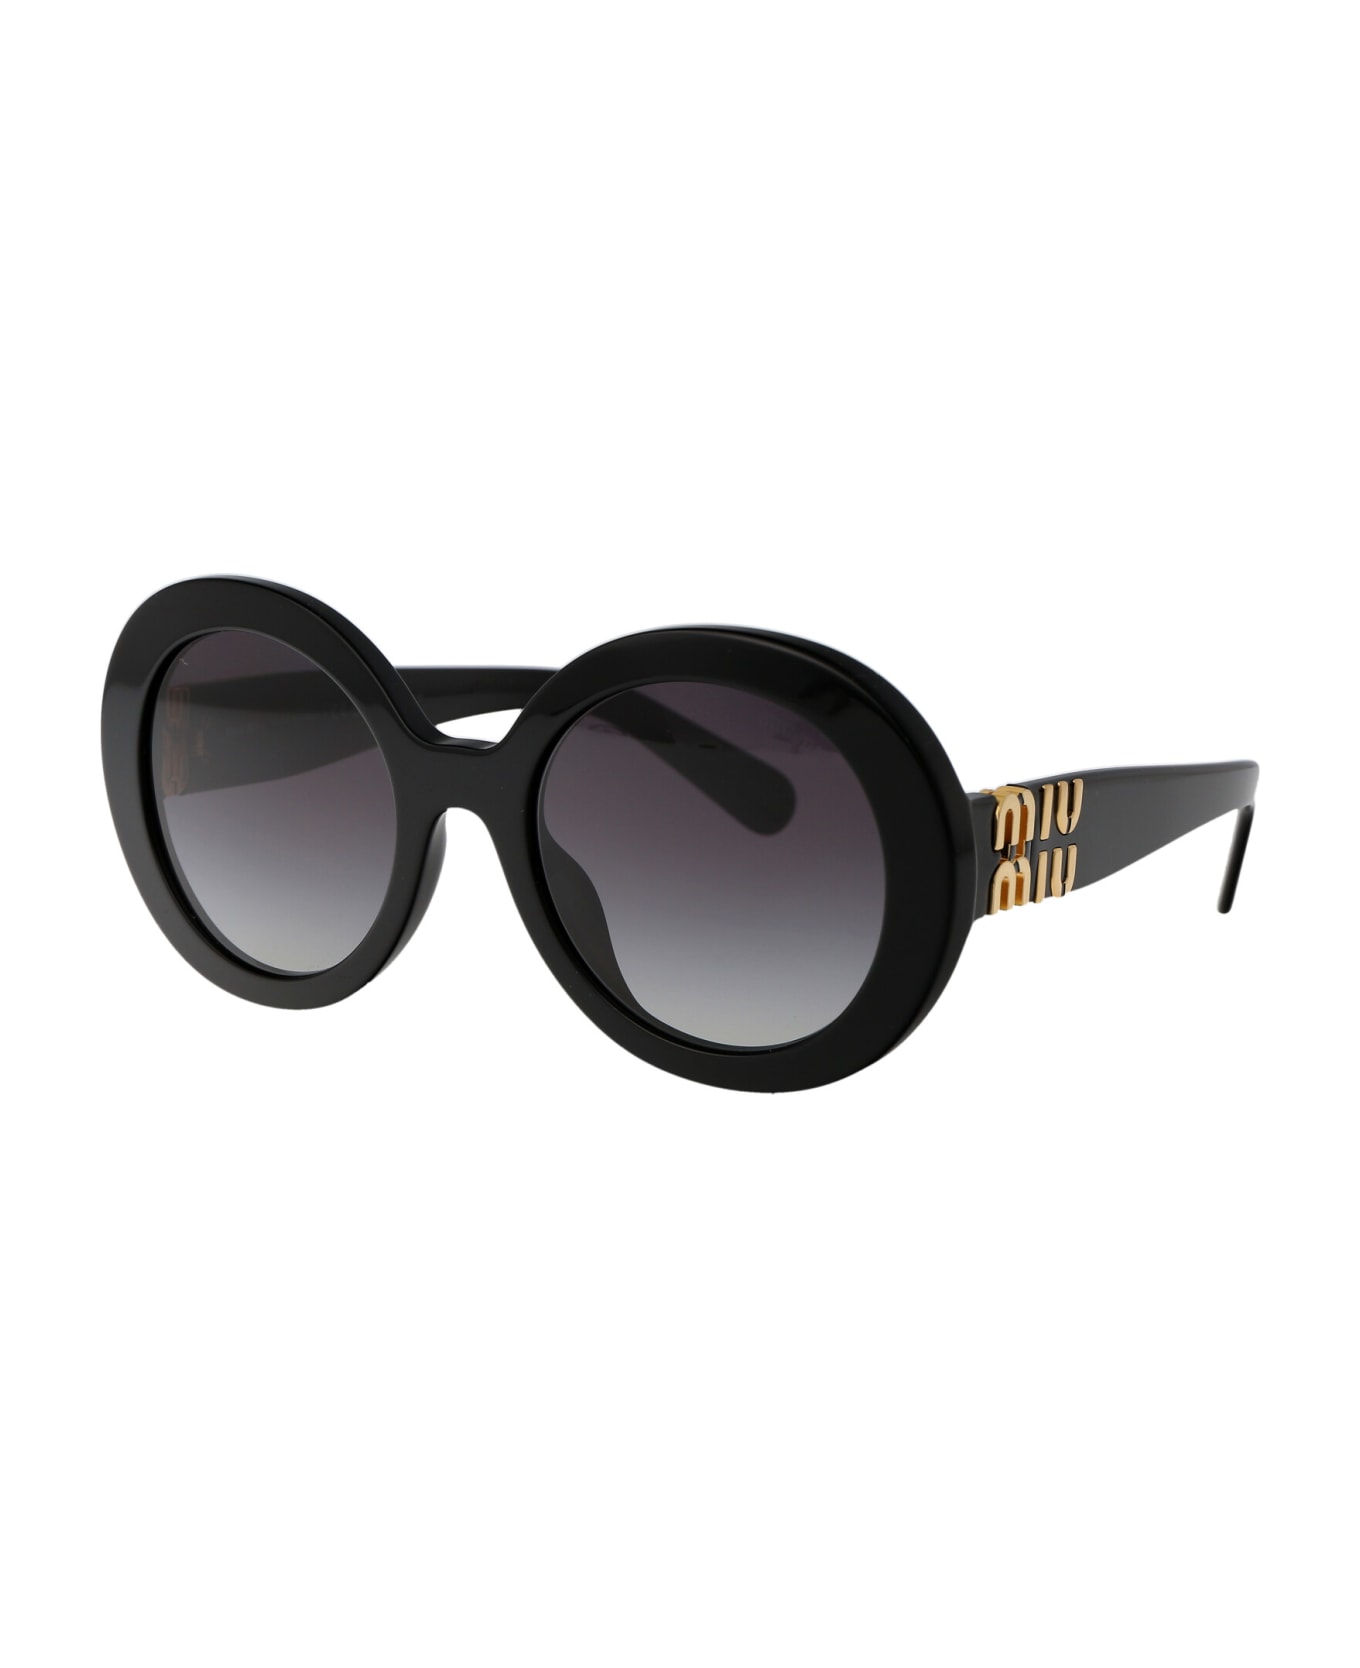 Miu Miu Eyewear 0mu 11ys Sunglasses - 1AB5D1 BLACK サングラス